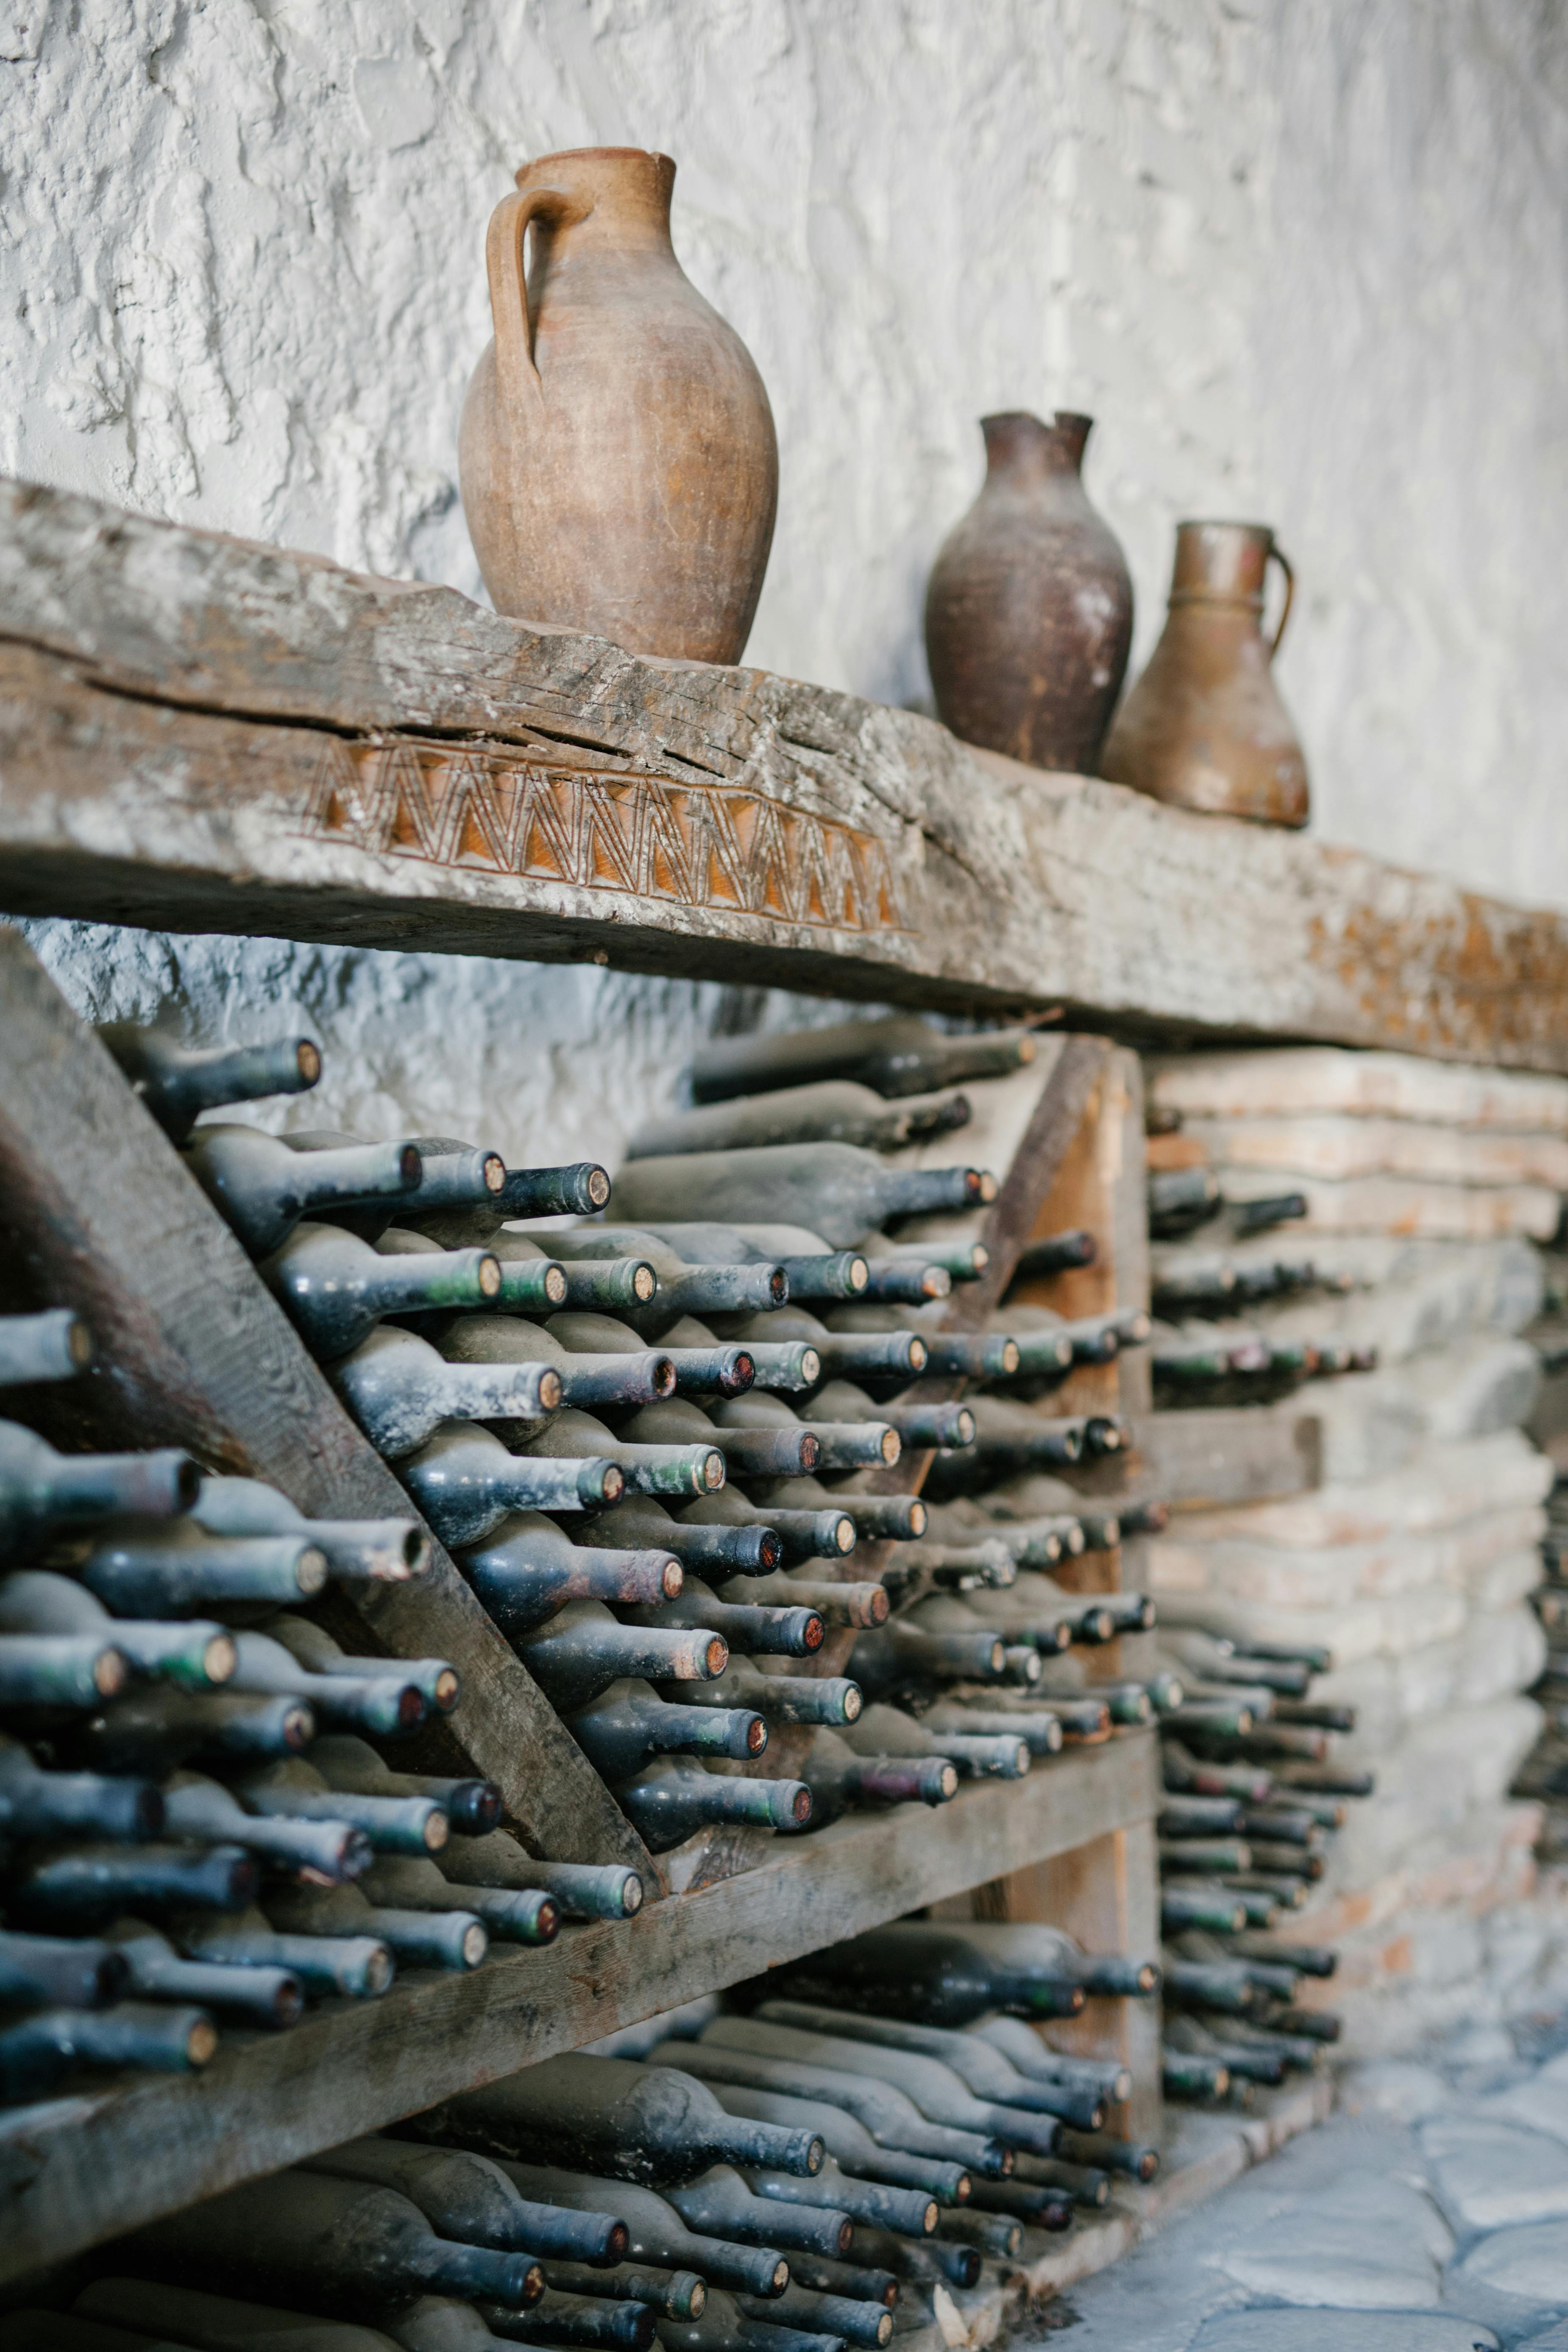 Holzregale mit verstaubten Weinflaschen aus Glas | Quelle: Pexels